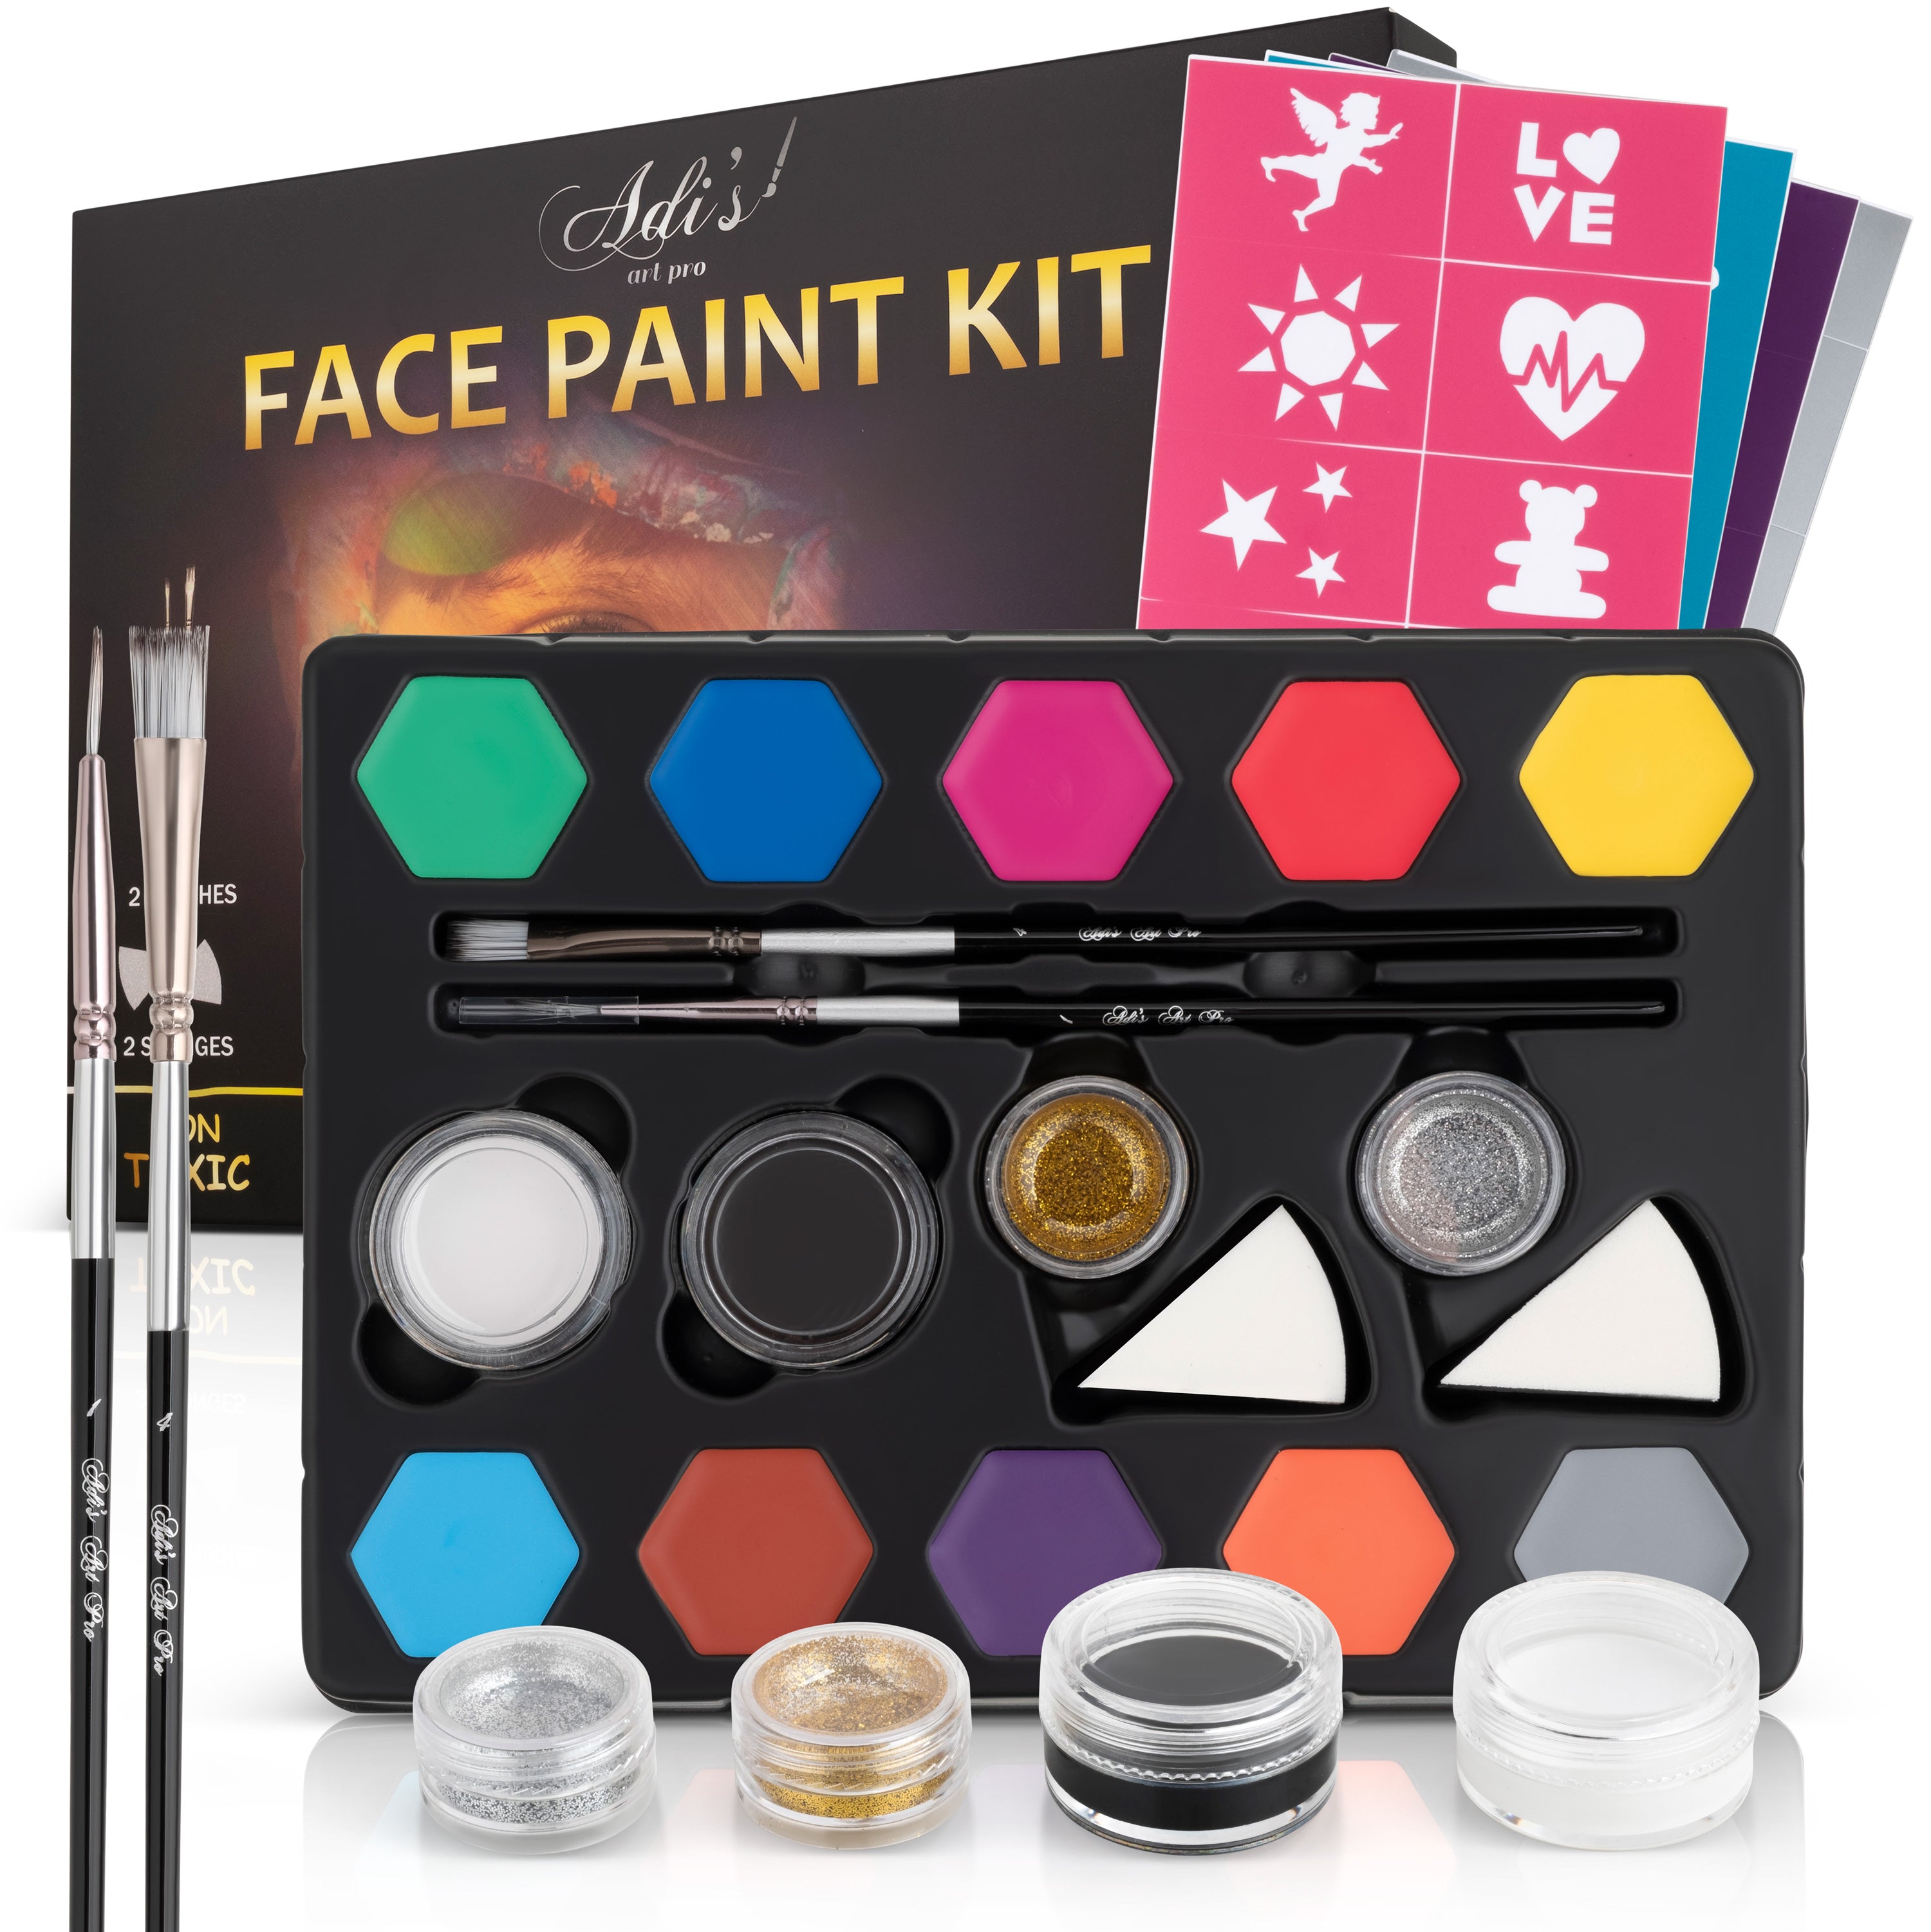  AOMIG Face Paint Kit, 20Pcs Make Up Set For Kids